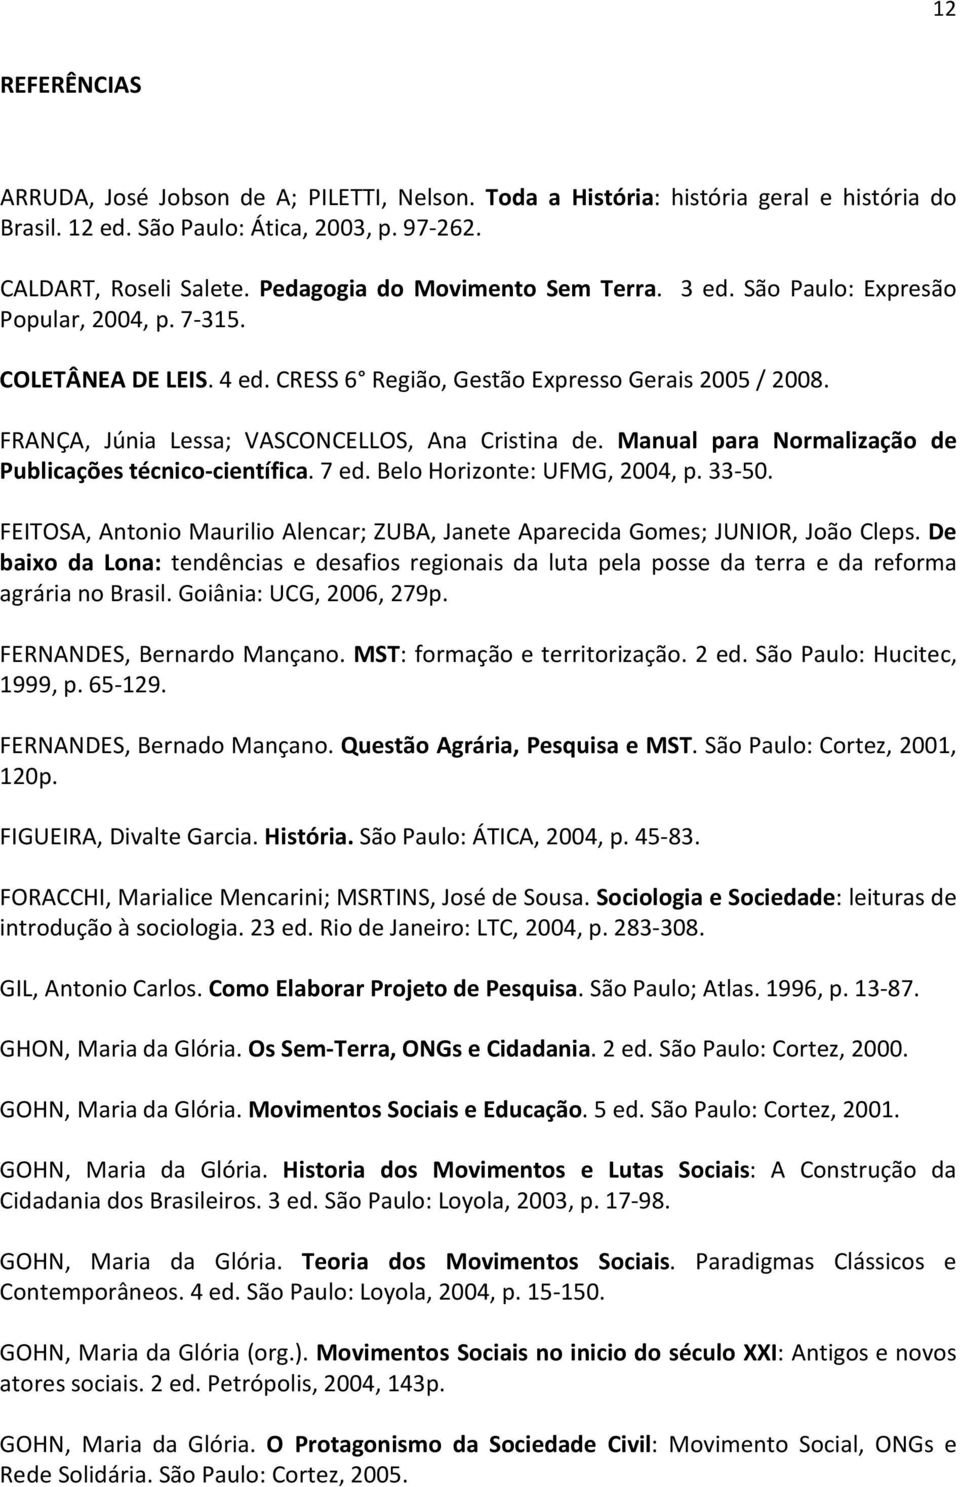 FRANÇA, Júnia Lessa; VASCONCELLOS, Ana Cristina de. Manual para Normalização de Publicações técnico-científica. 7 ed. Belo Horizonte: UFMG, 2004, p. 33-50.